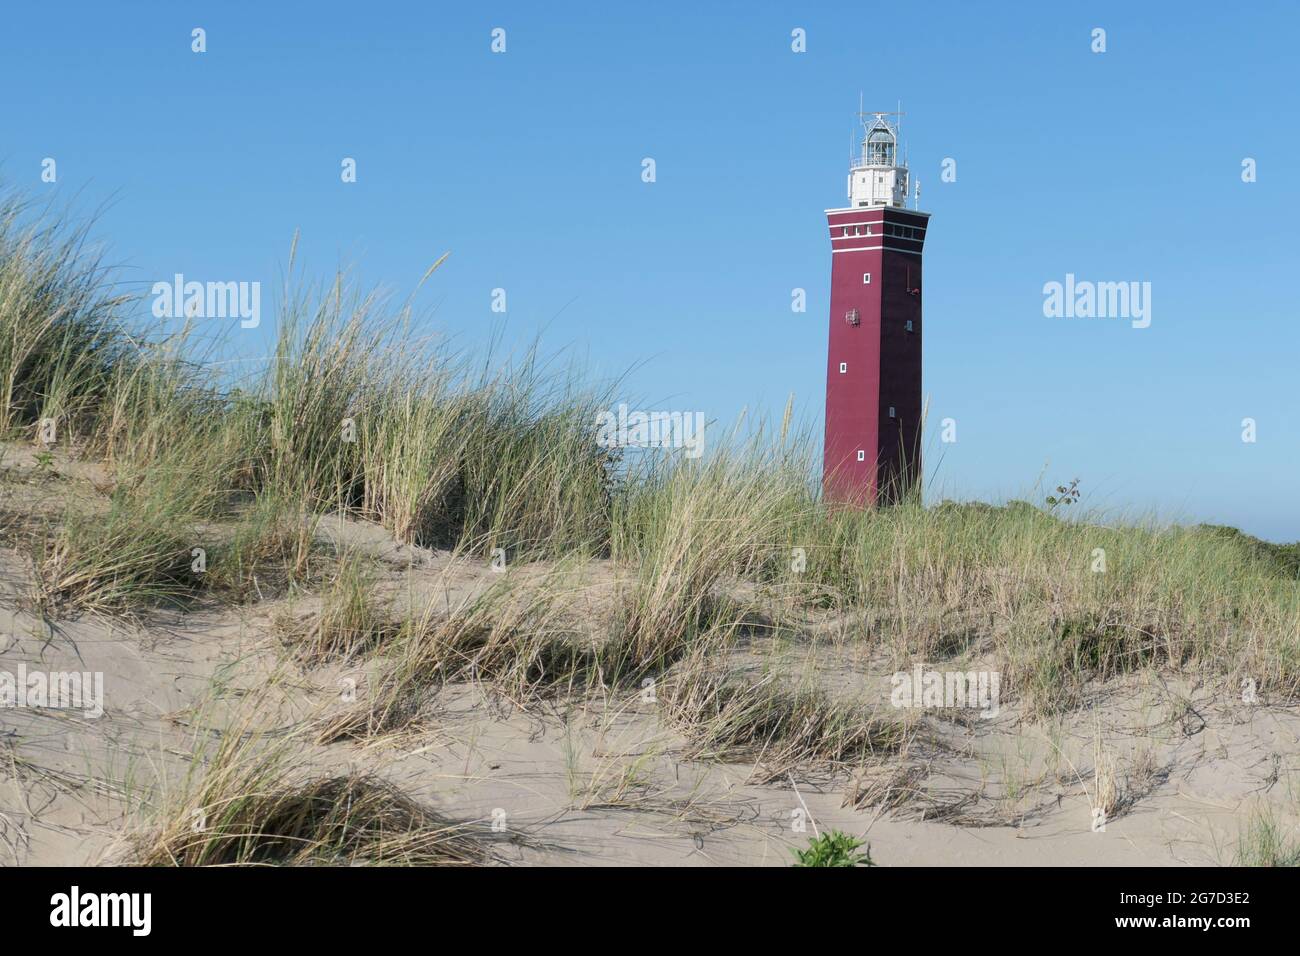 Der Westhoofd (West Head) Leuchtturm in der Nähe von Ouddorp, Niederlande, liegt in einer Sanddünenlandschaft, gesehen gegen einen klaren blauen Himmel. Stockfoto